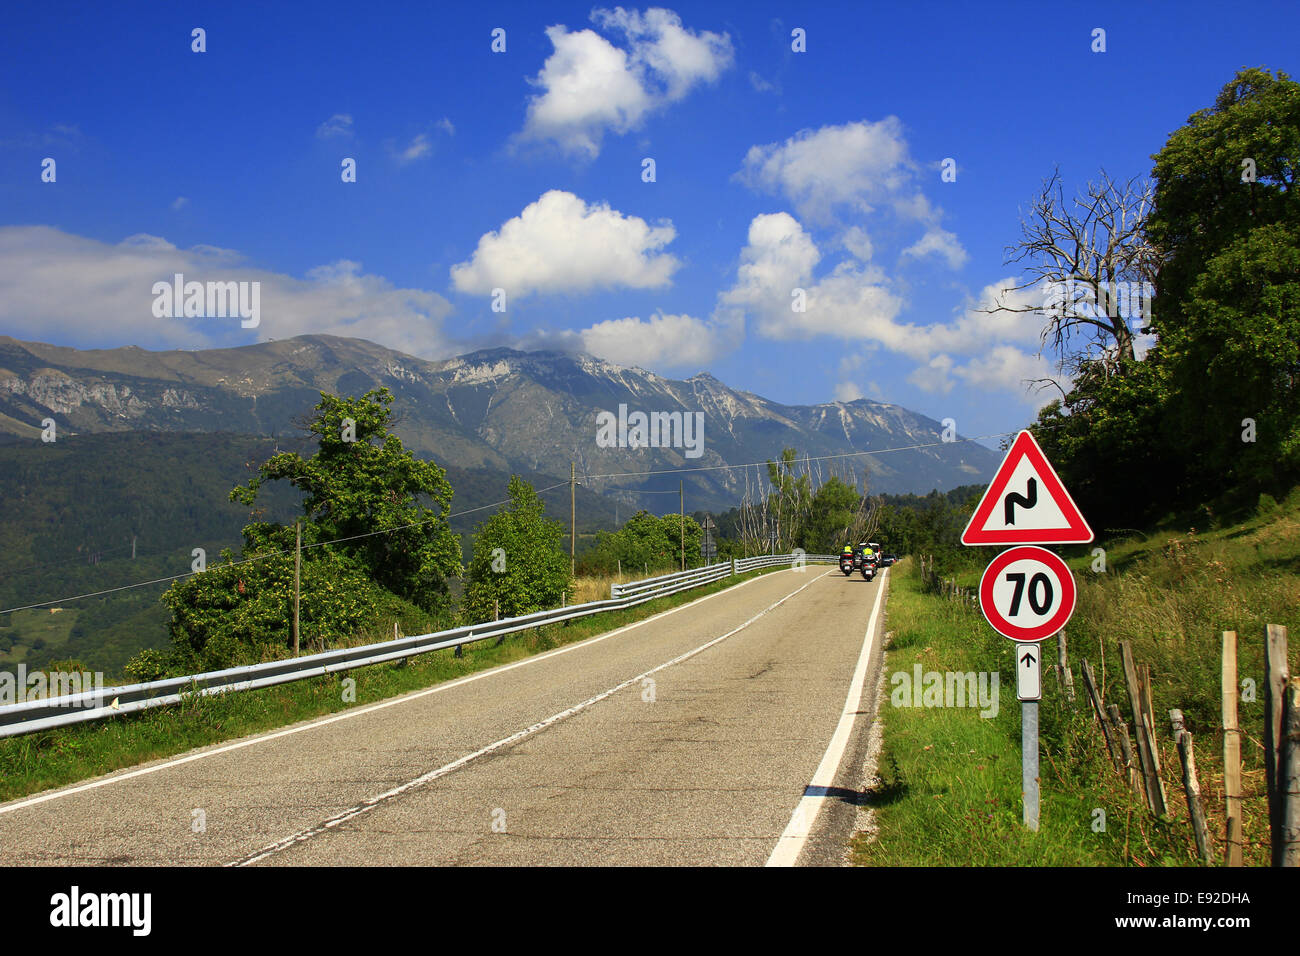 Mountain Road at Monte Baldo, Italy Stock Photo